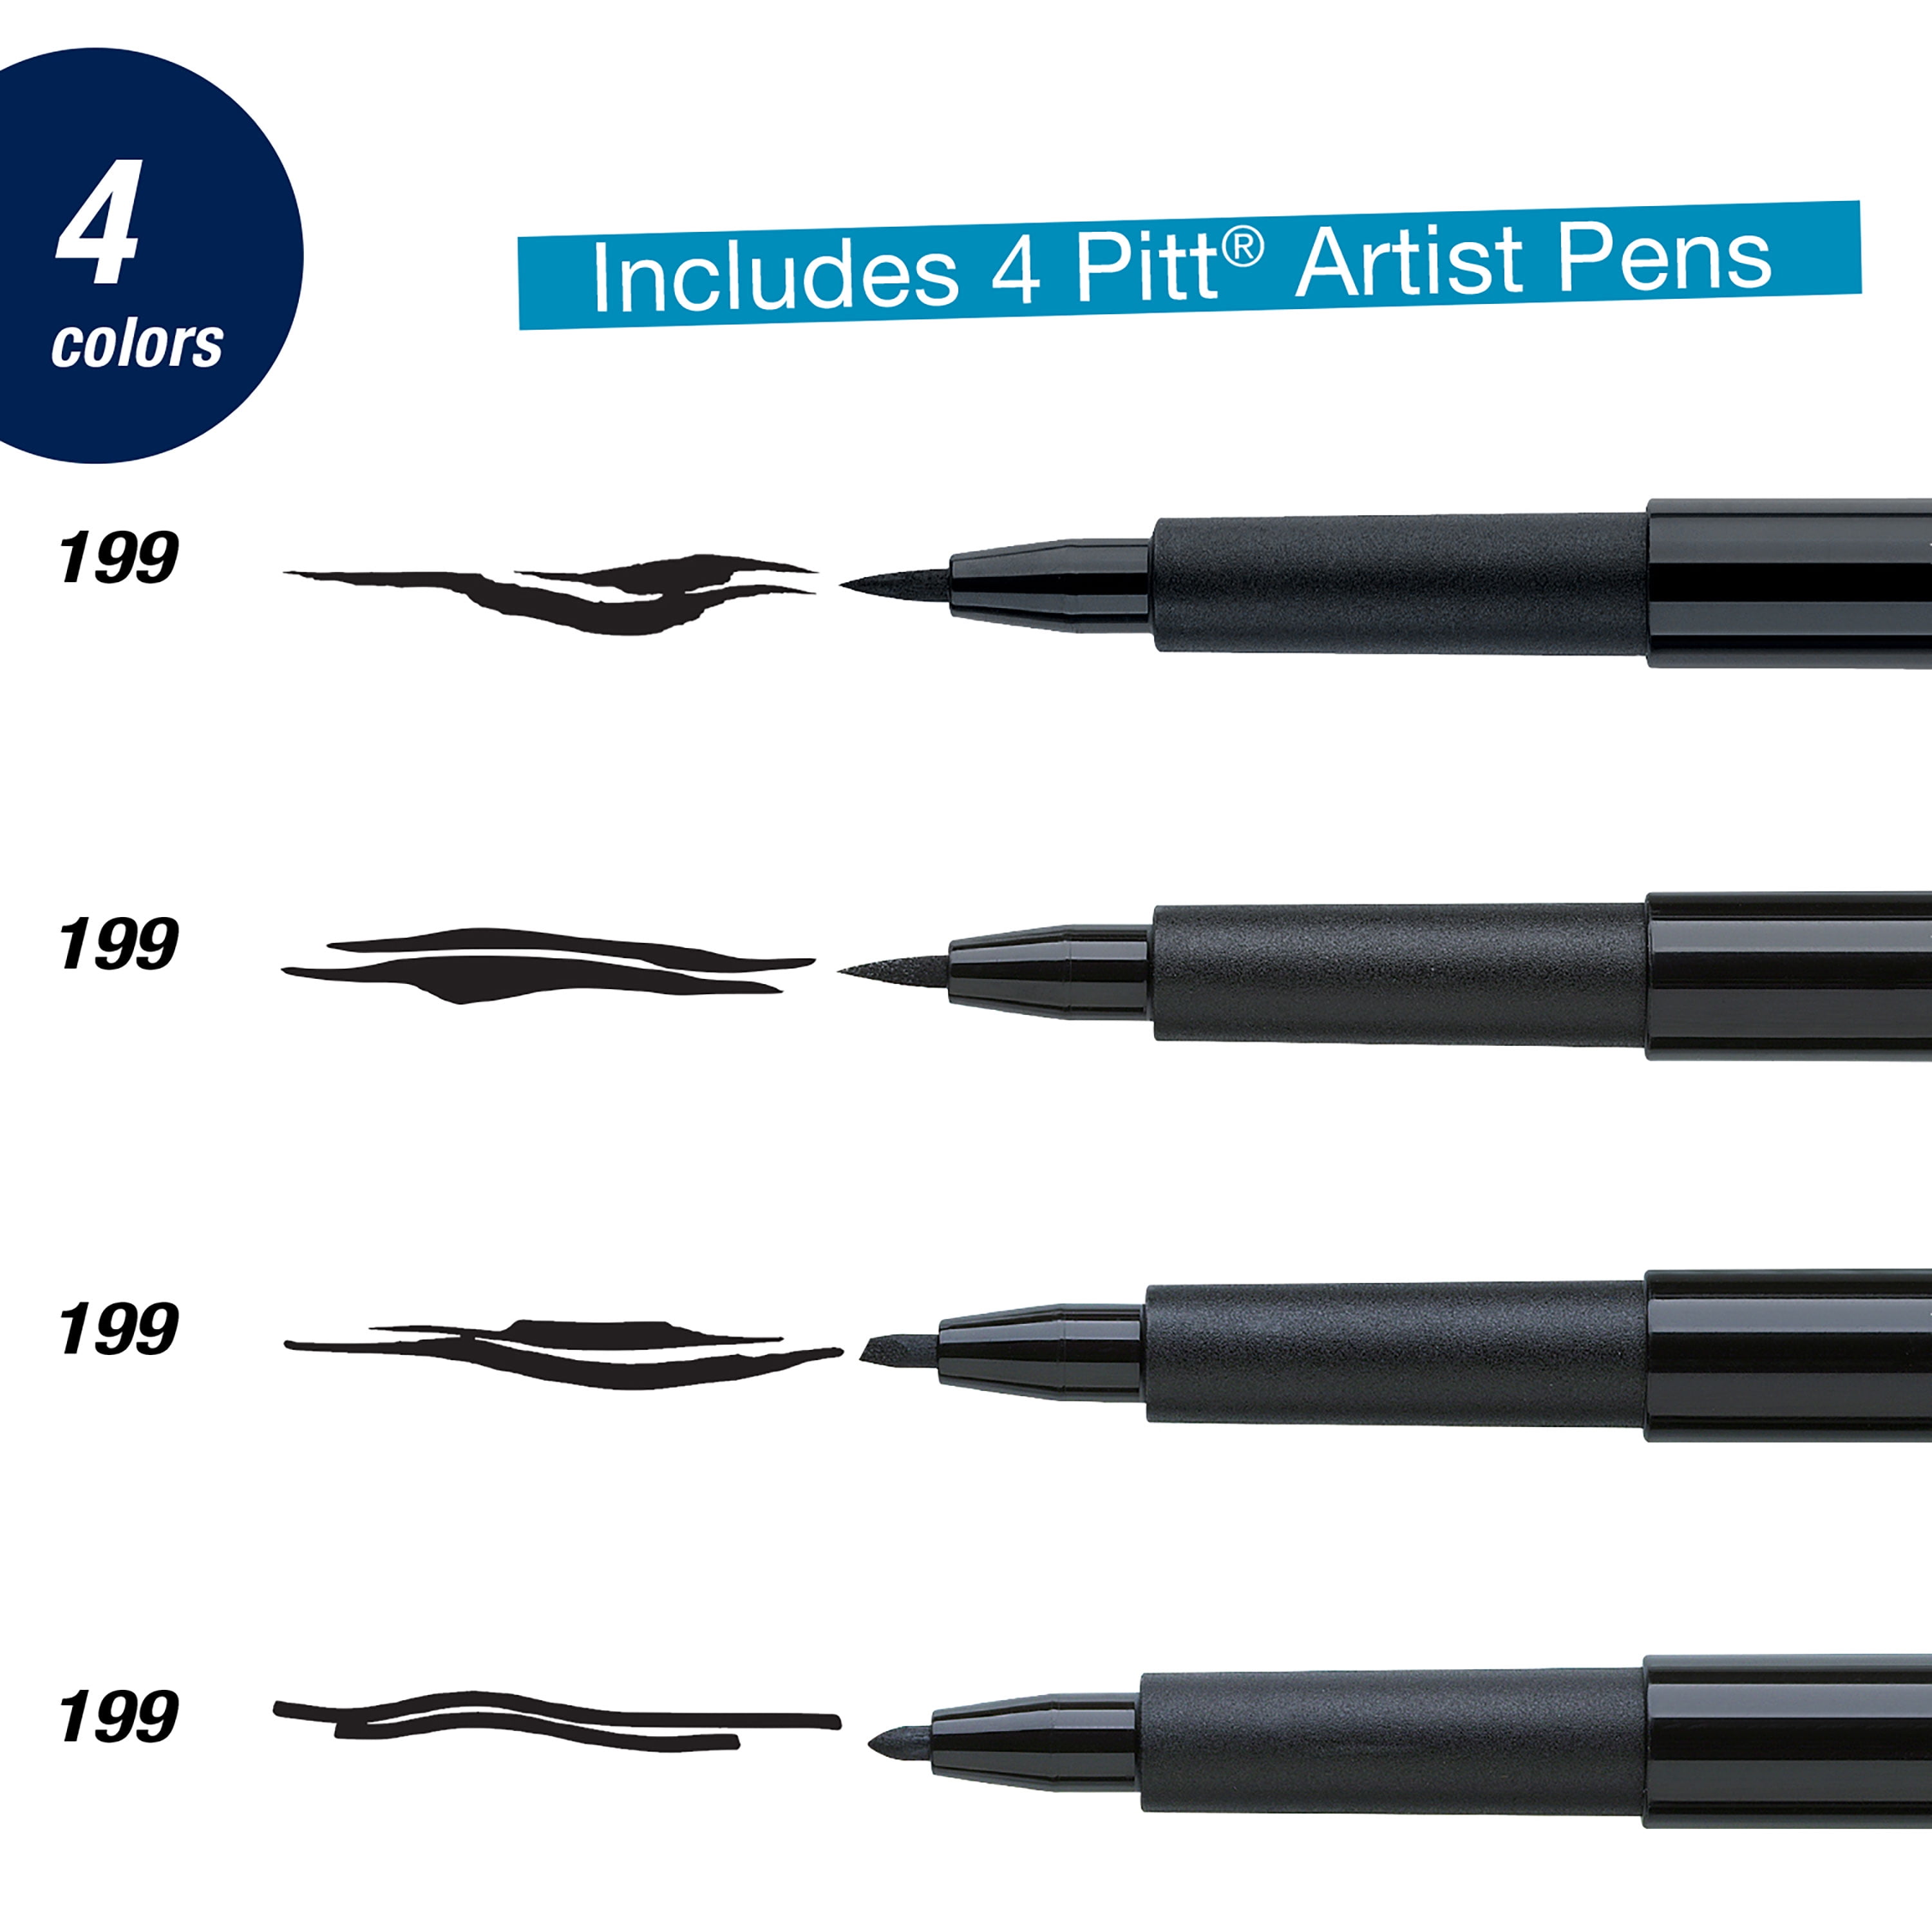 Faber-Castell PITT Calligraphy Pen Set Black - Meininger Art Supply